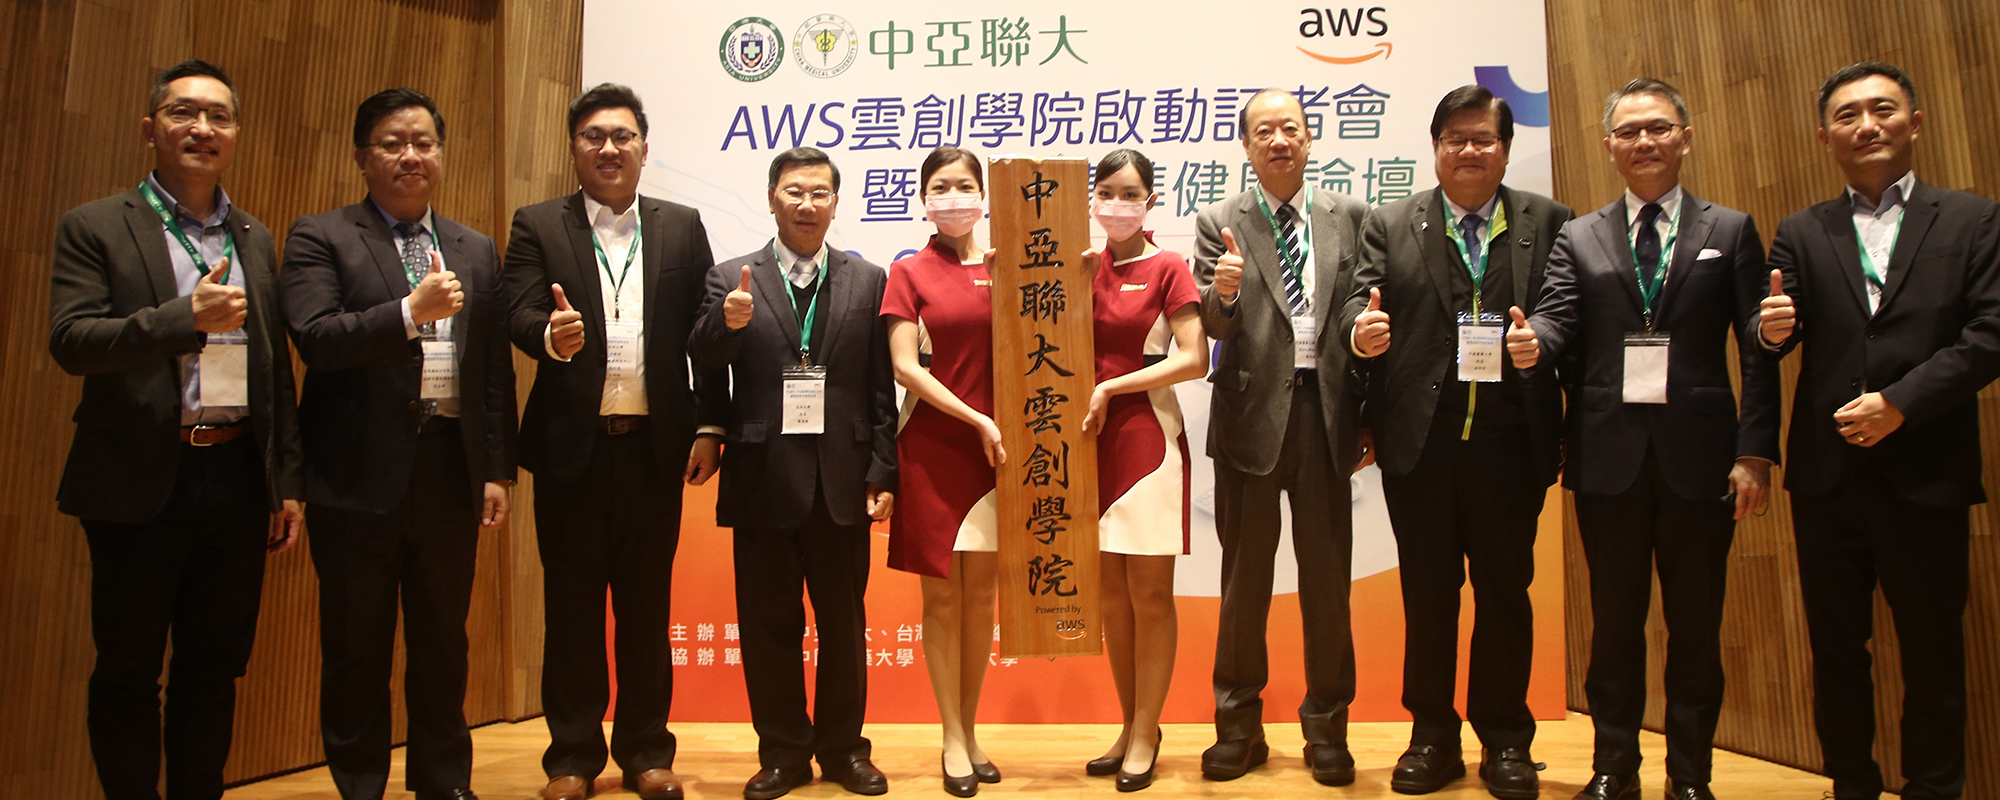 「中亞聯大」與AWS創設智慧醫療雲創學院